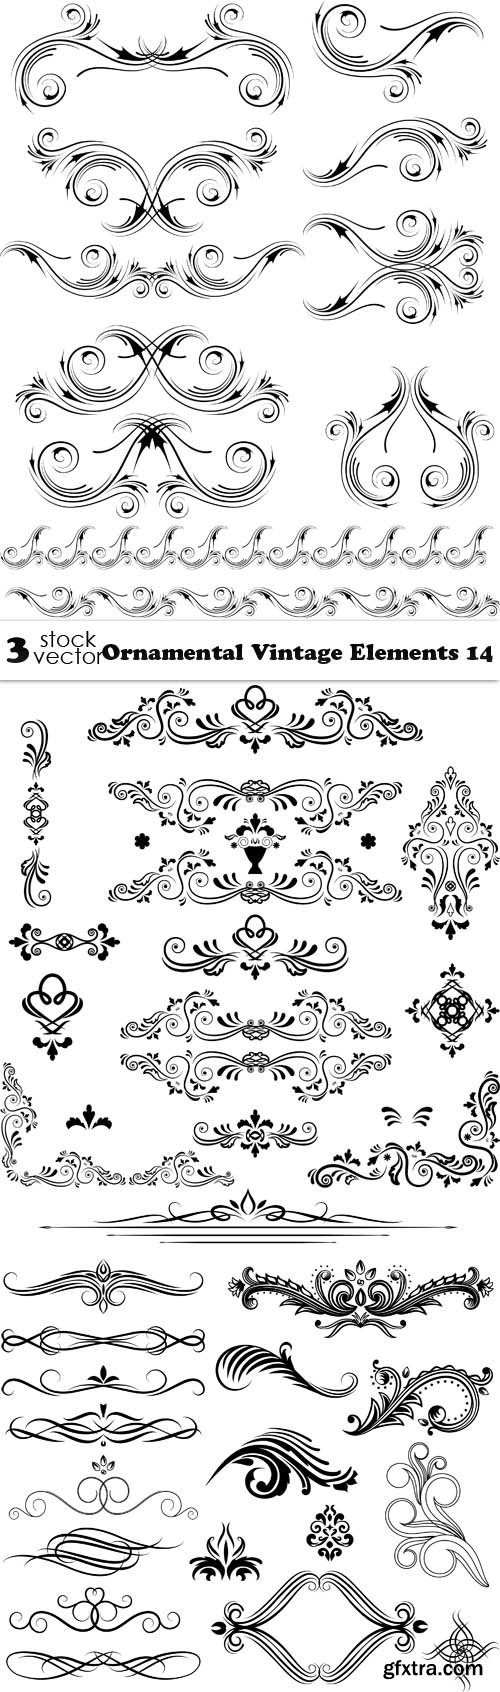 Vectors - Ornamental Vintage Elements 14